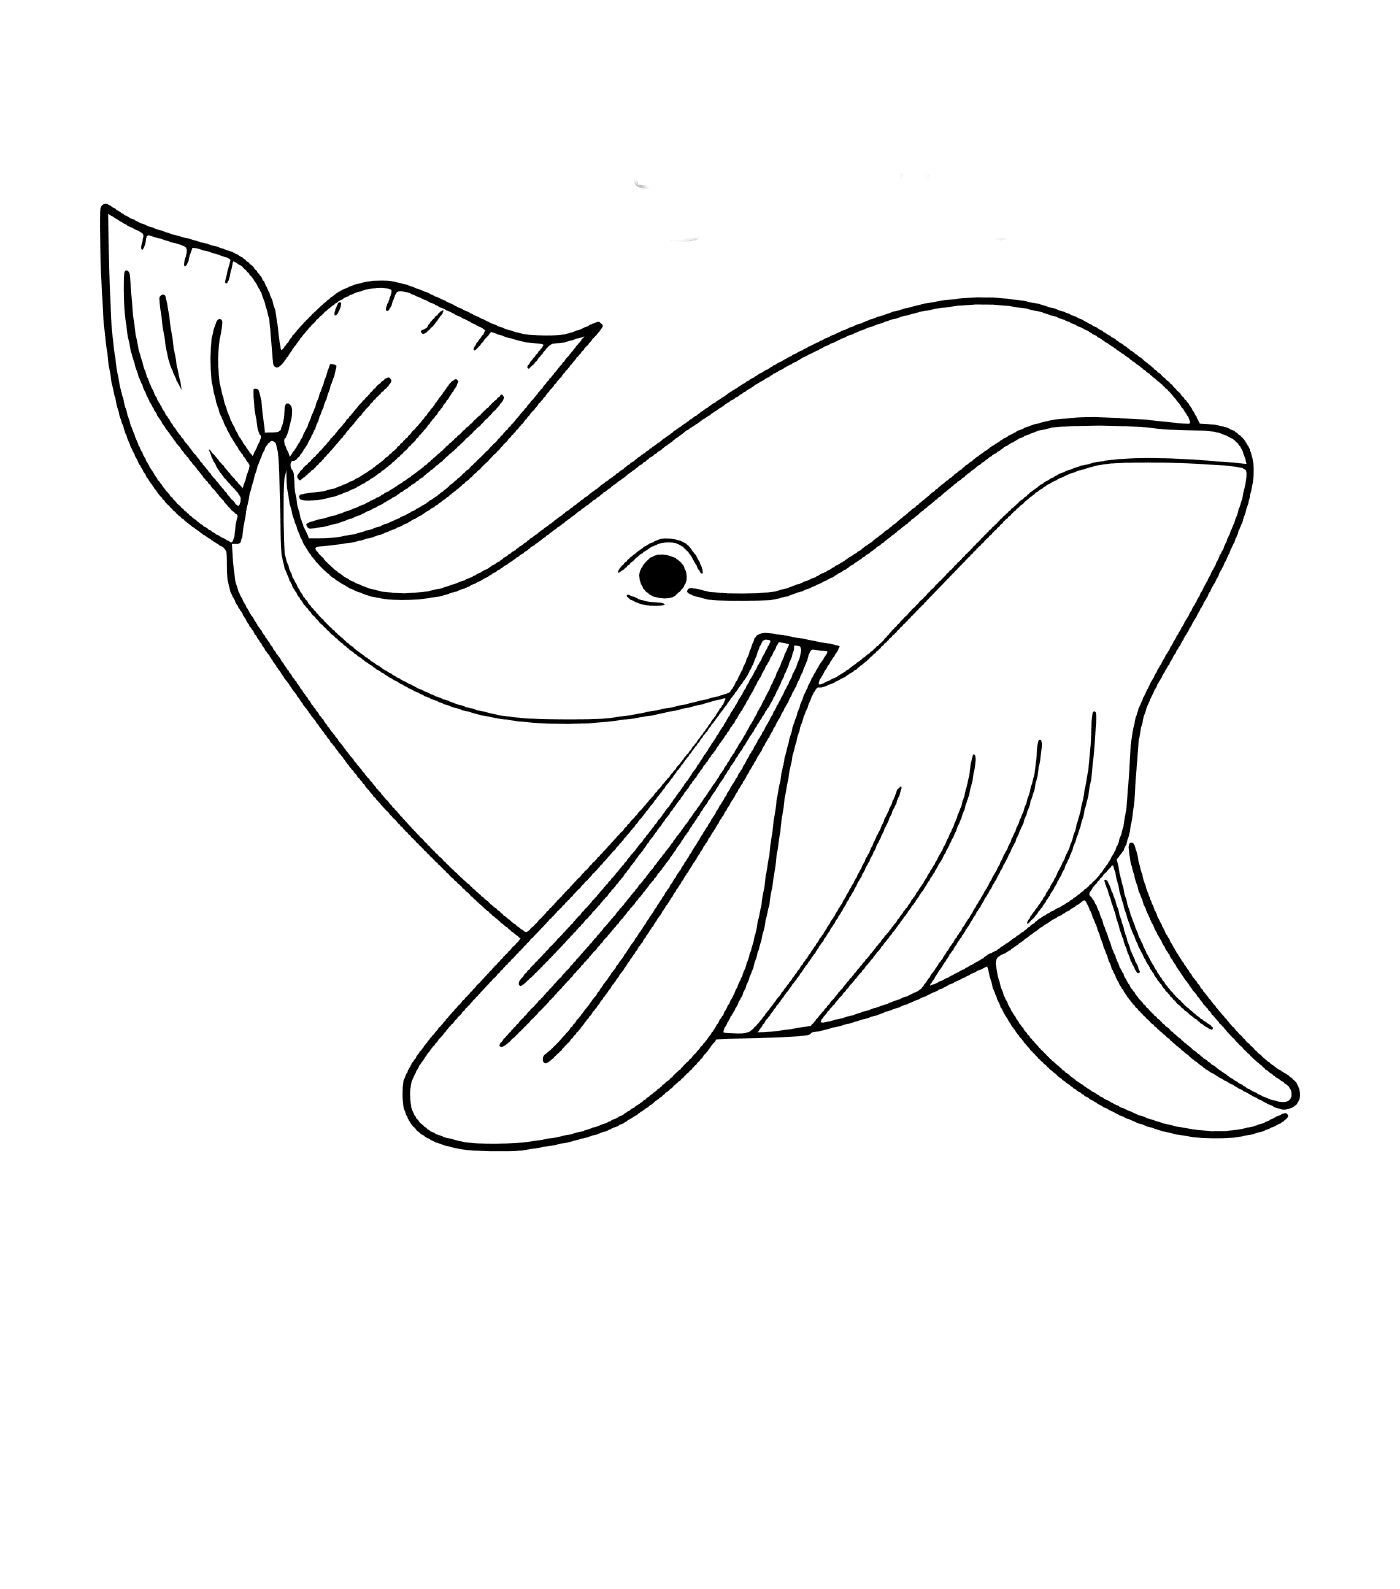  a whale 